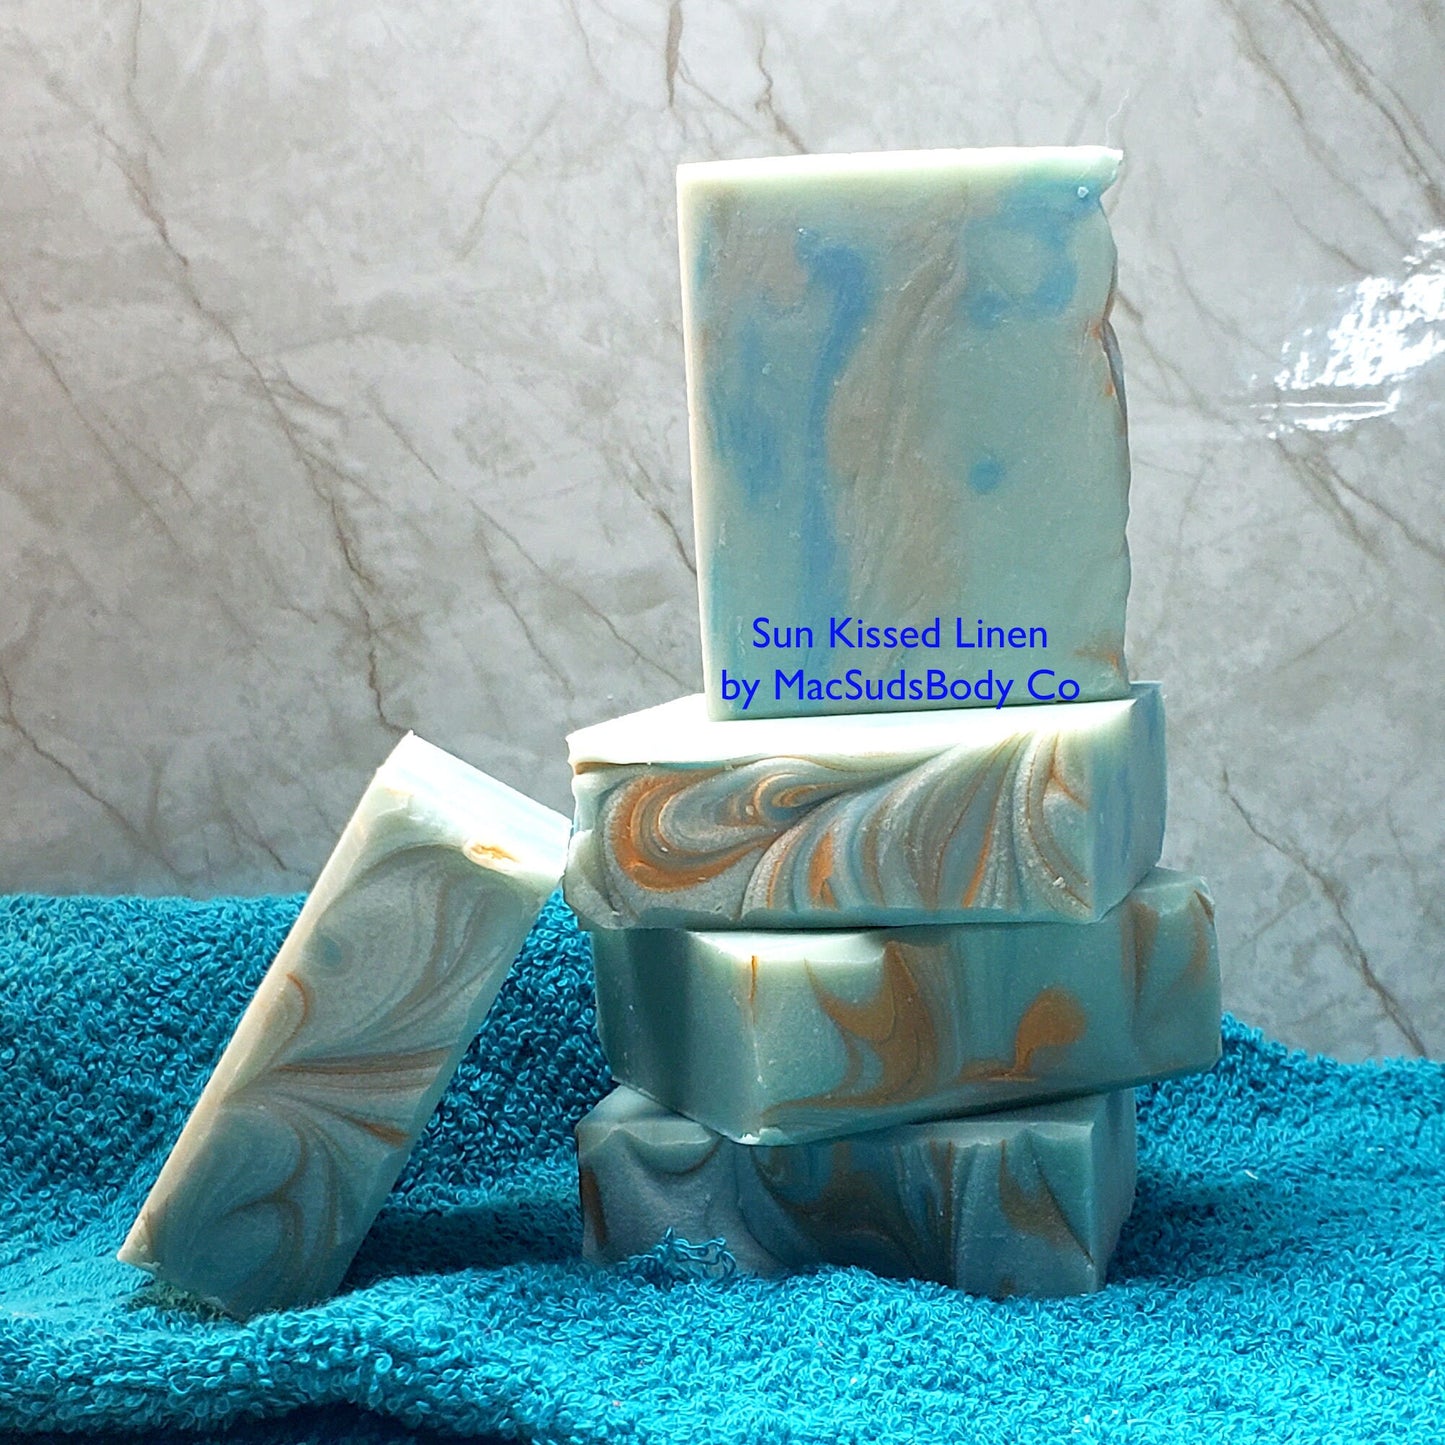 Sun Kissed Linen Handmade Soap